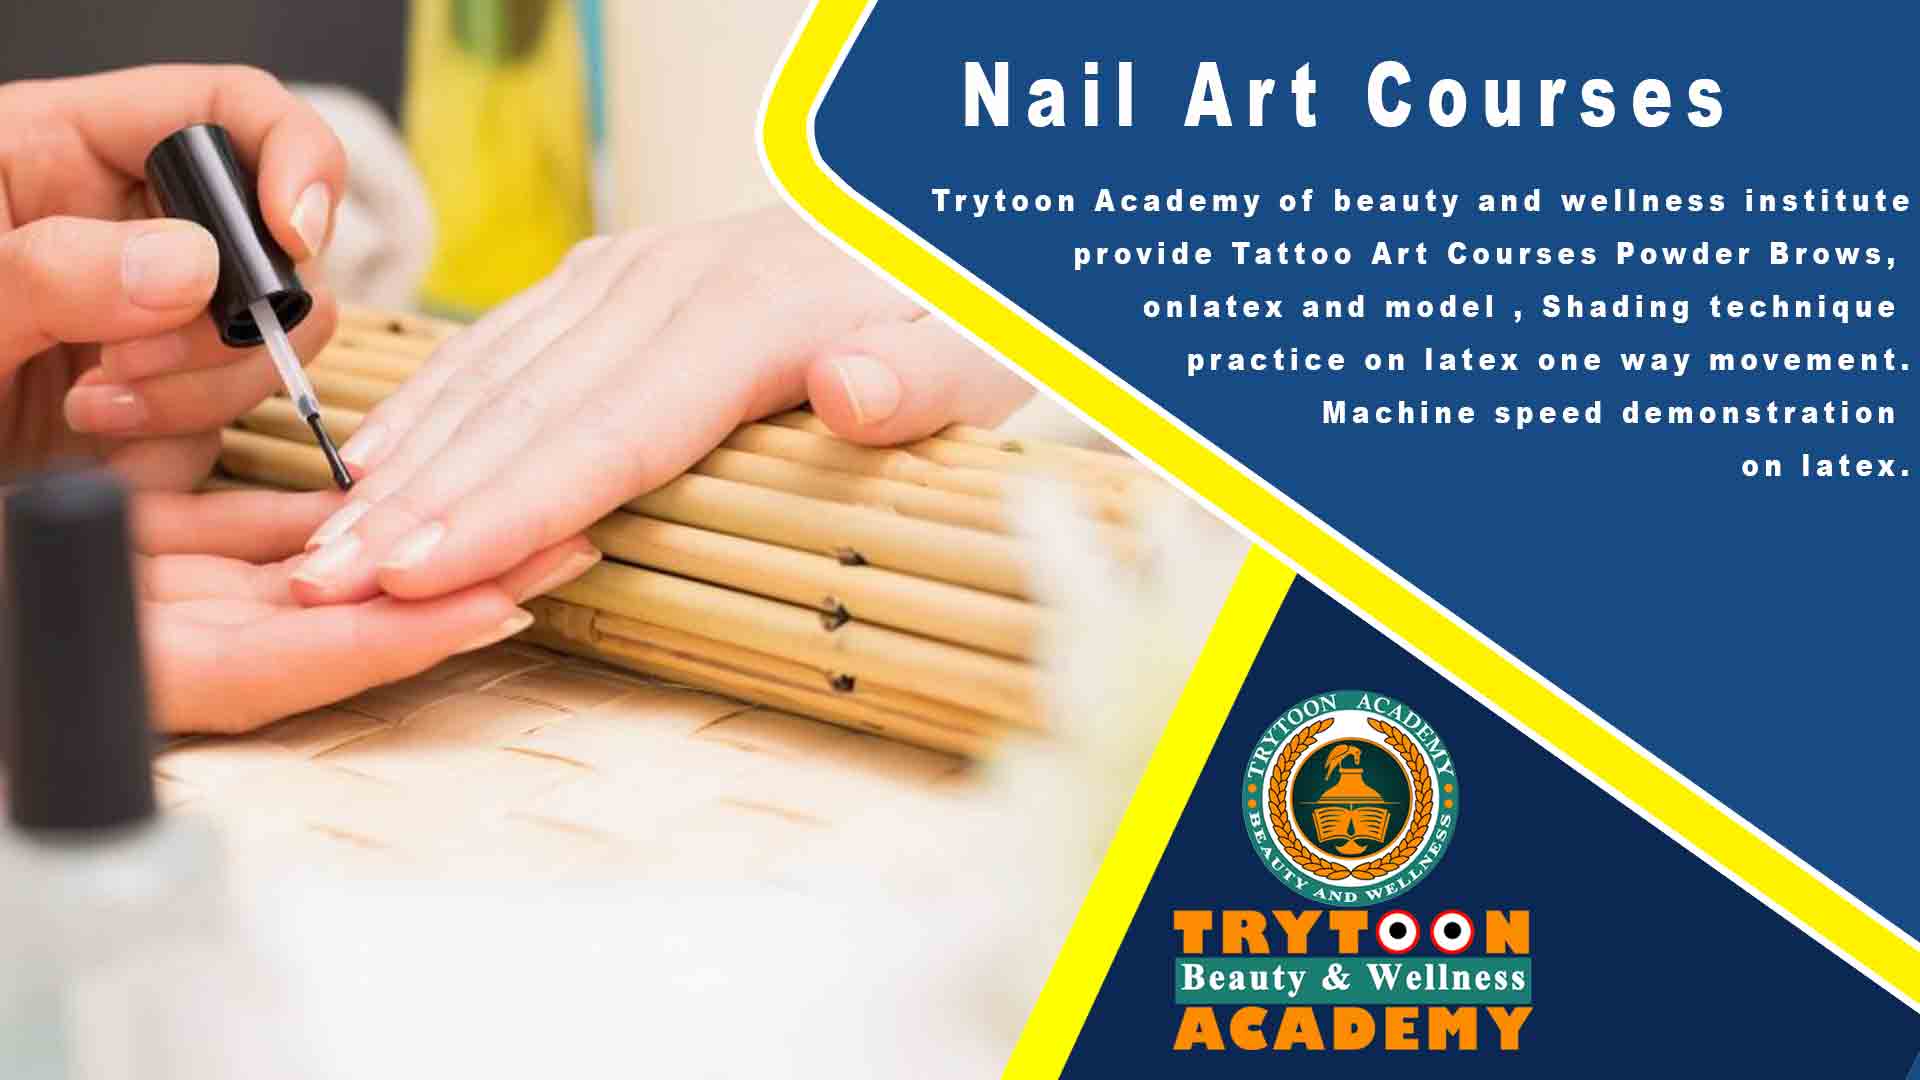 5. Professional Nail Art Course at Pearl Academy Kolkata - wide 2